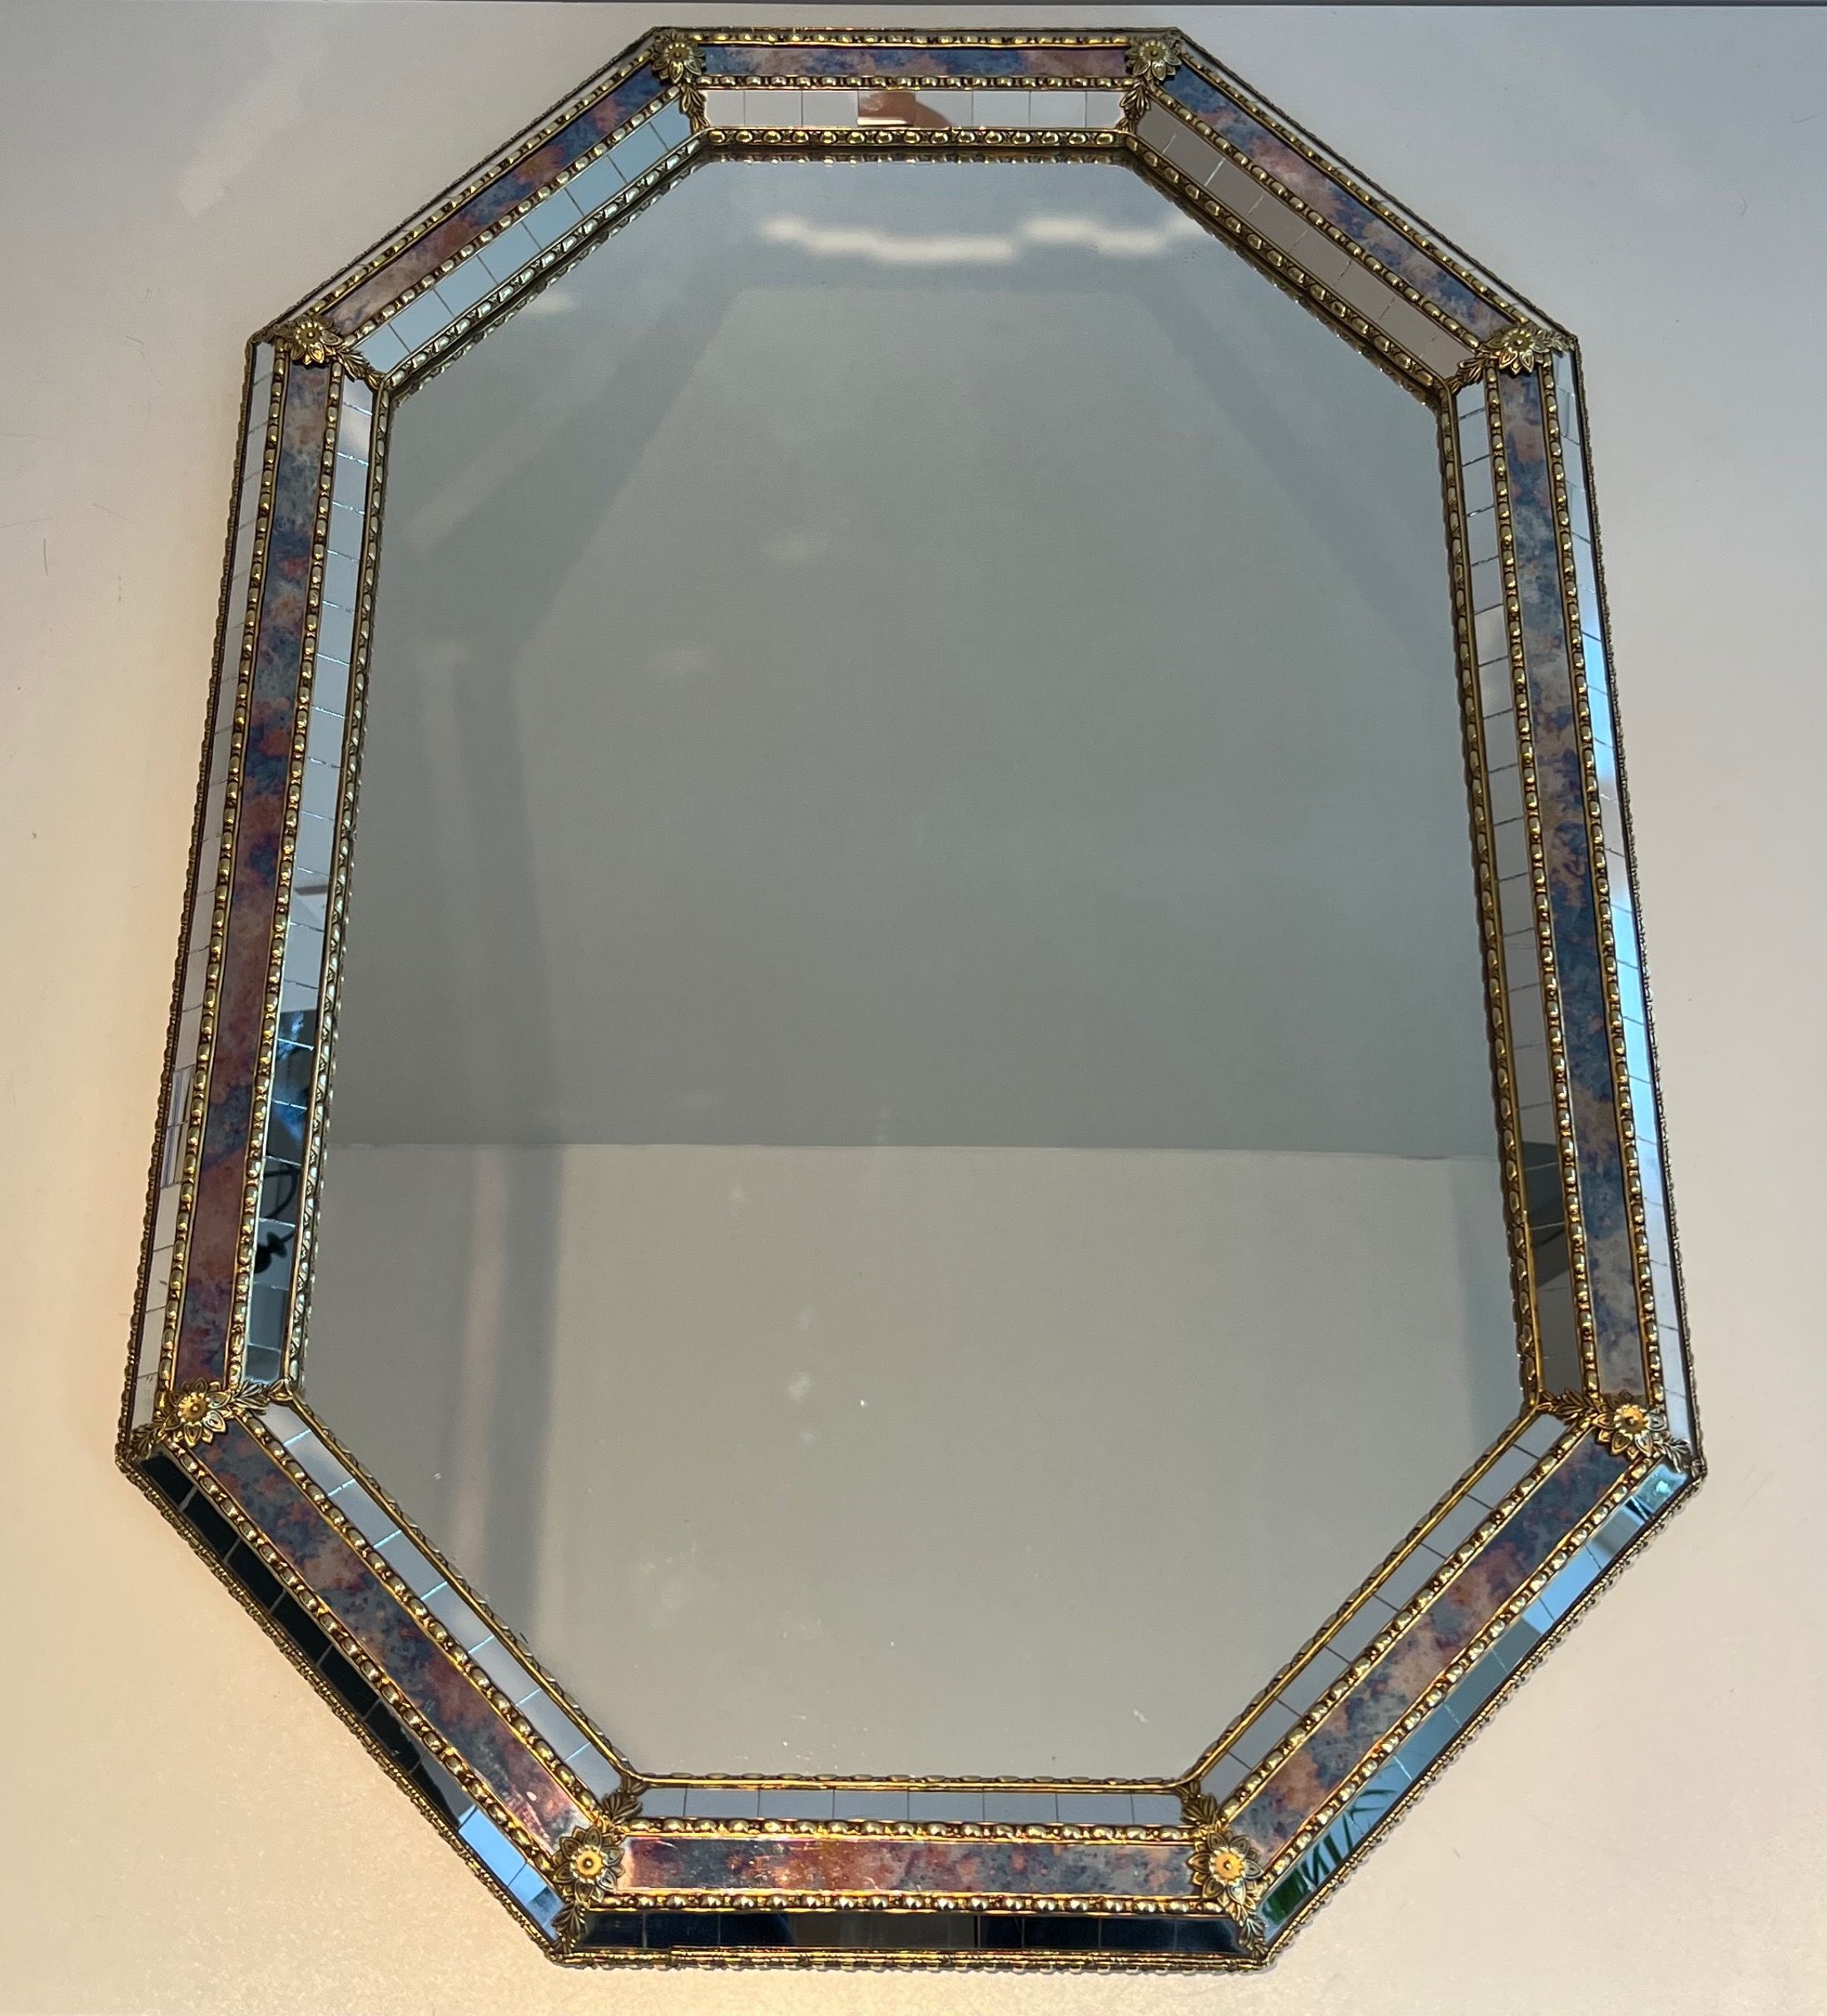 Miroir Rectangulaire constitué de Miroirs Multi-Facettes et Guirlandes de Laiton